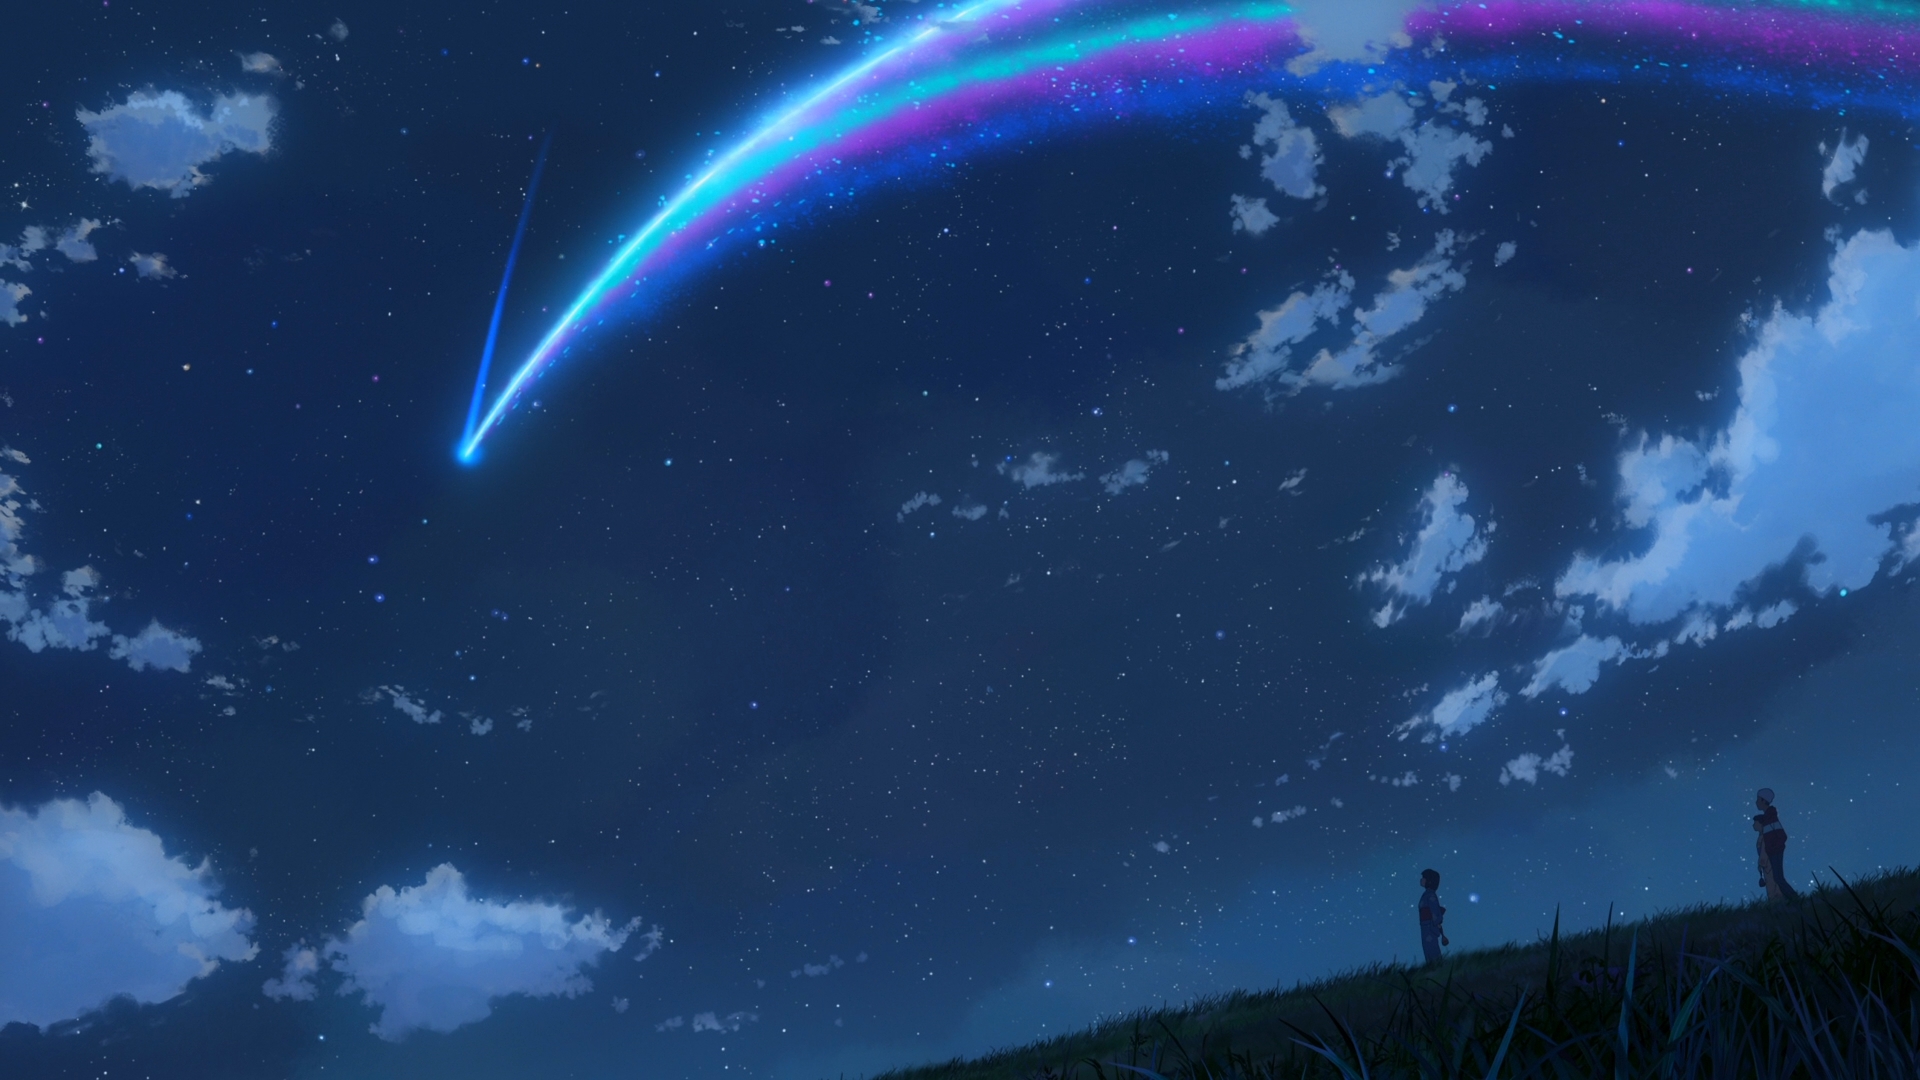 Anime 1920x1080 Kimi no Na Wa Makoto Shinkai  starry night comet